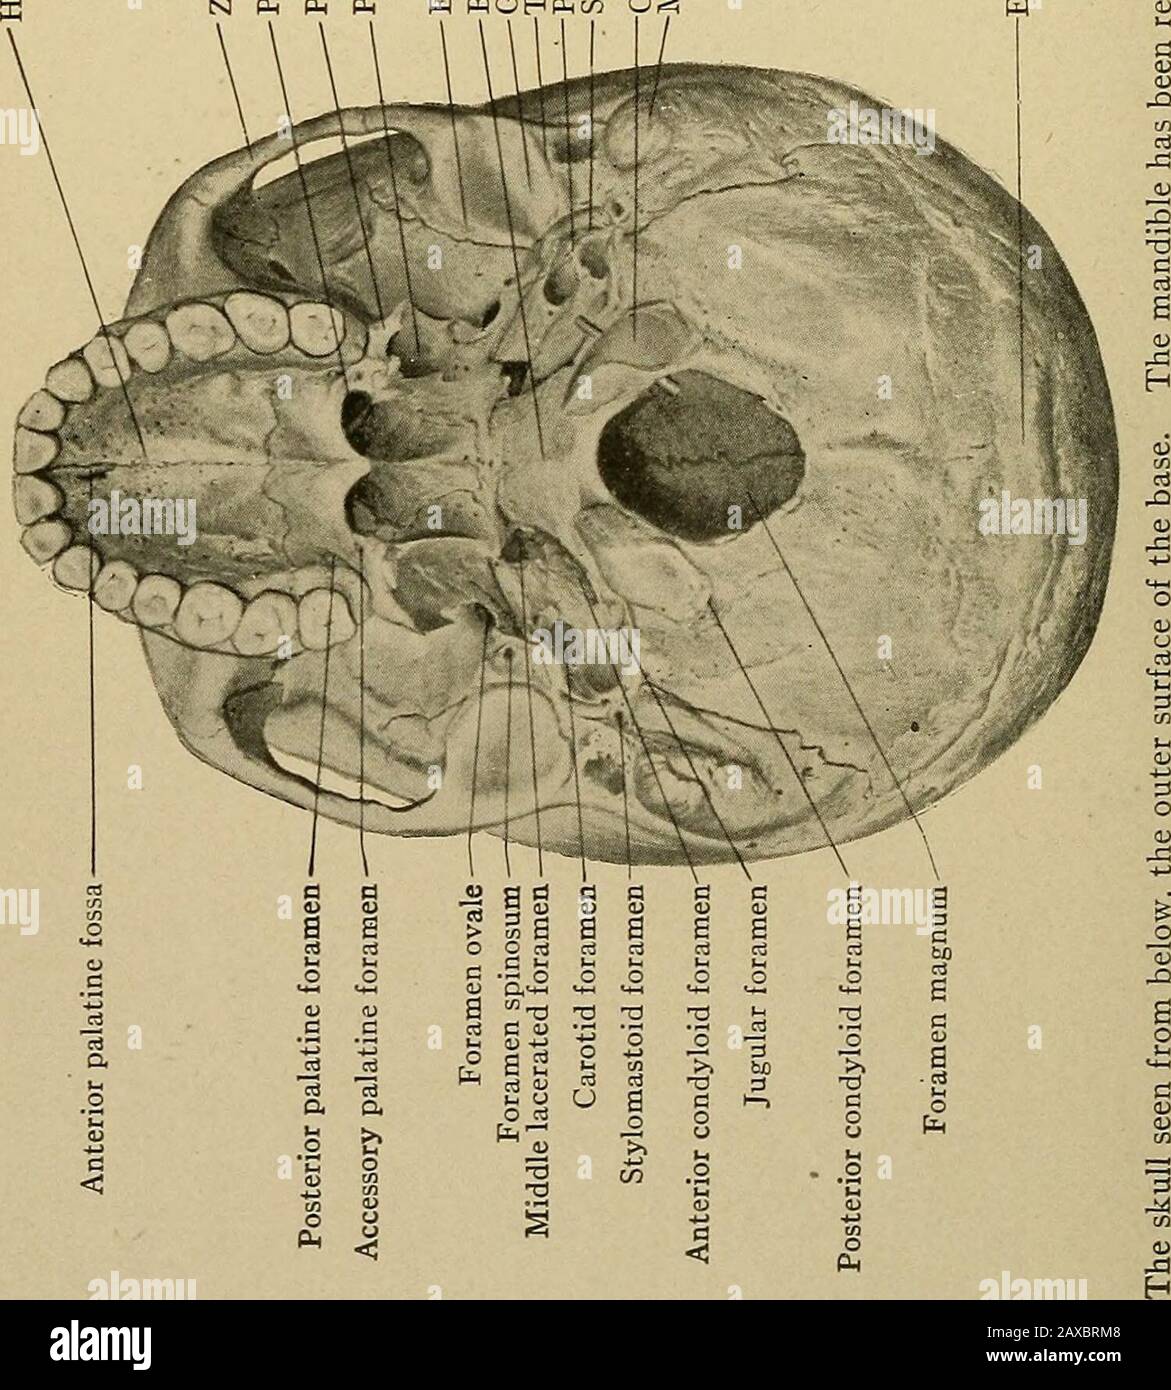 Anatomia applicata e chirurgia orale per gli studenti dentali . processo rygoid della sphenoide, le narici posteriori, la fossa pterigoide, l'eminentia articularis, la glenoidfossa, la piastra timpanica, il processo stiloide, il processo emastoide, la porzione petroica del temporalbone, il basilar e i processi condyloidi dell'occitalbone, l'osso, l'osso e la protuberanza occipitale esterna. Sono visibili importanti foramina: La foramina anteriore, posteriore e accessoria, la foramina palatina, il forame ovale, il forame spinosum, carotide, lacerato medio, stilo-mastoide, lacerato posteriore o giugulare, anteriore e posteriore c Foto Stock